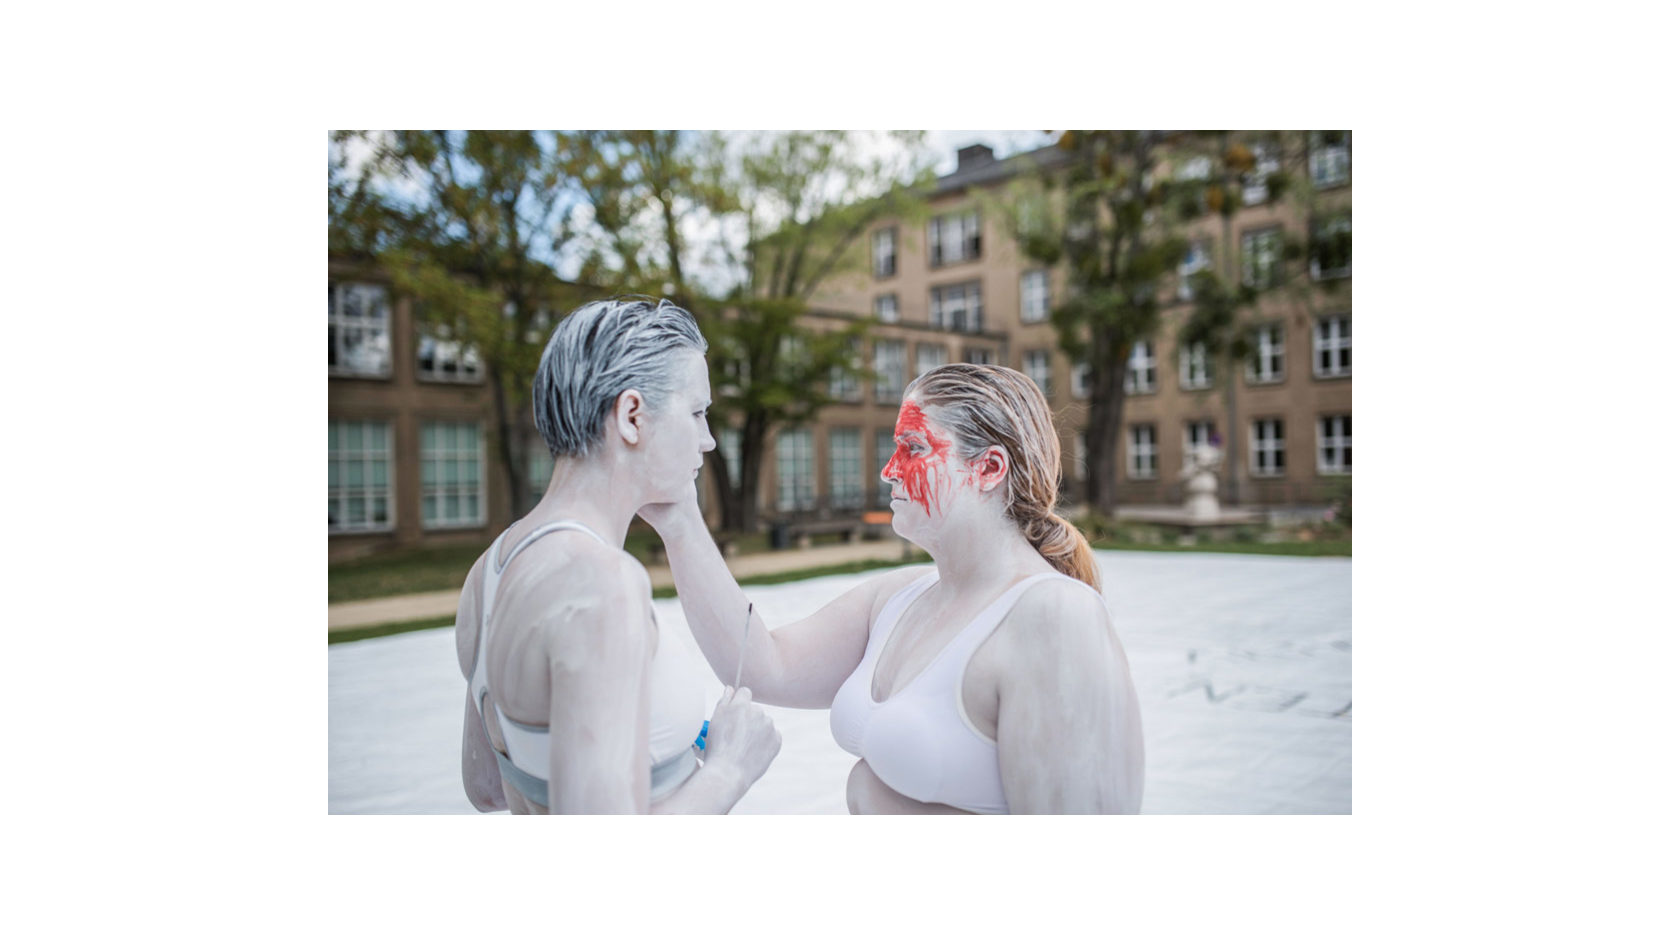 Bei den Orten des Miteinanders sind auf dem Campus der TU Dresden zwei Frauen am ganzen Körper mit weißer Farbe bemalt und berühren sich im Gesicht.